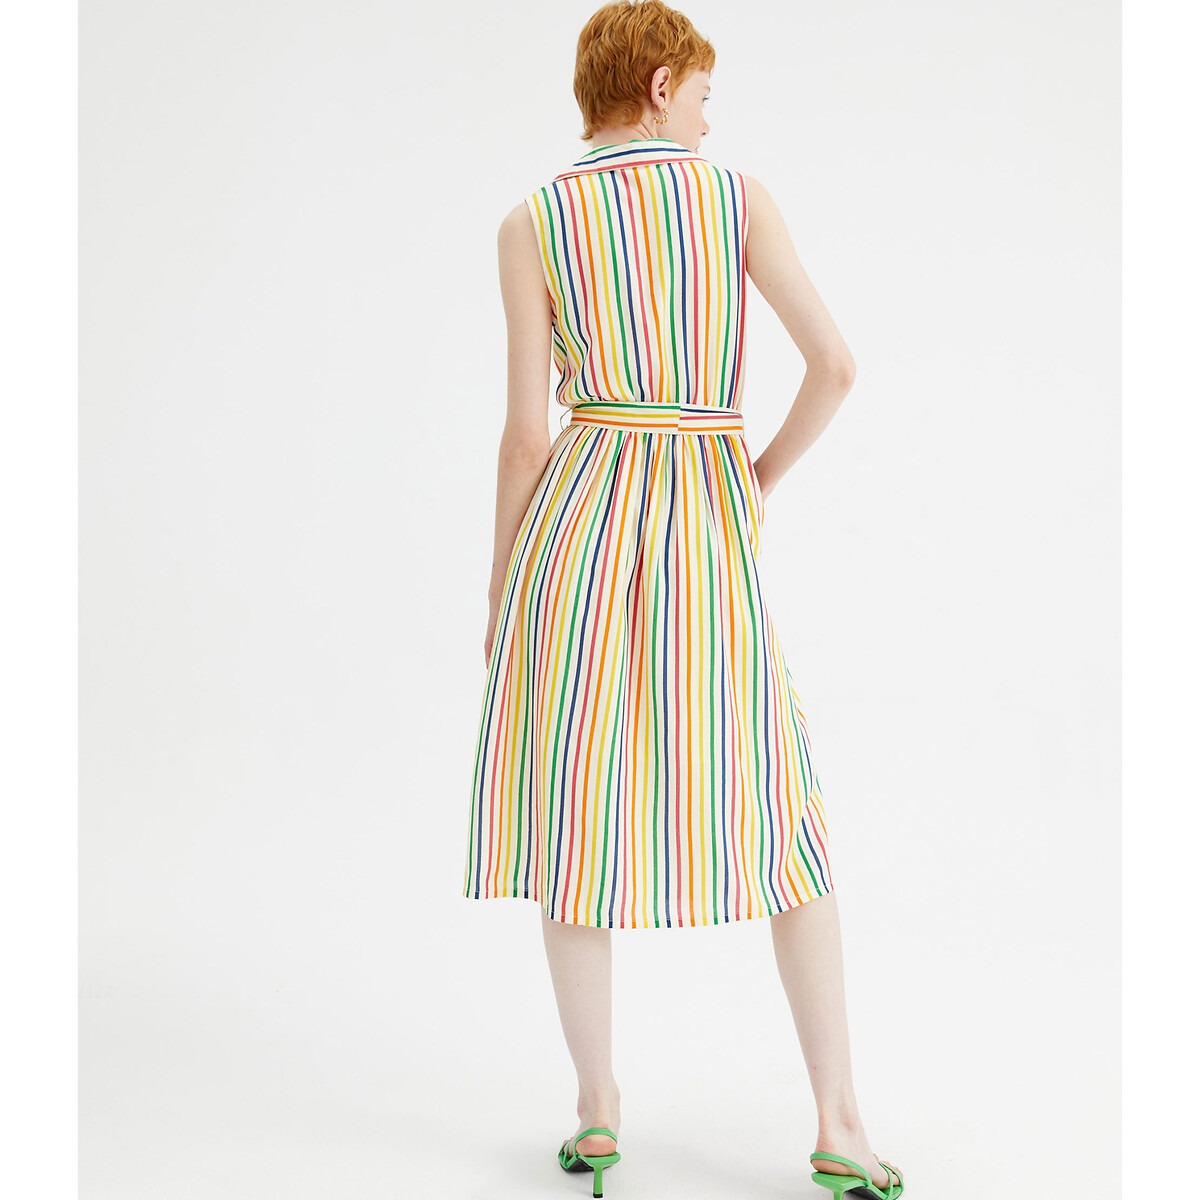 Платье-миди Без рукавов в разноцветную полоску XL разноцветный LaRedoute, размер XL - фото 3